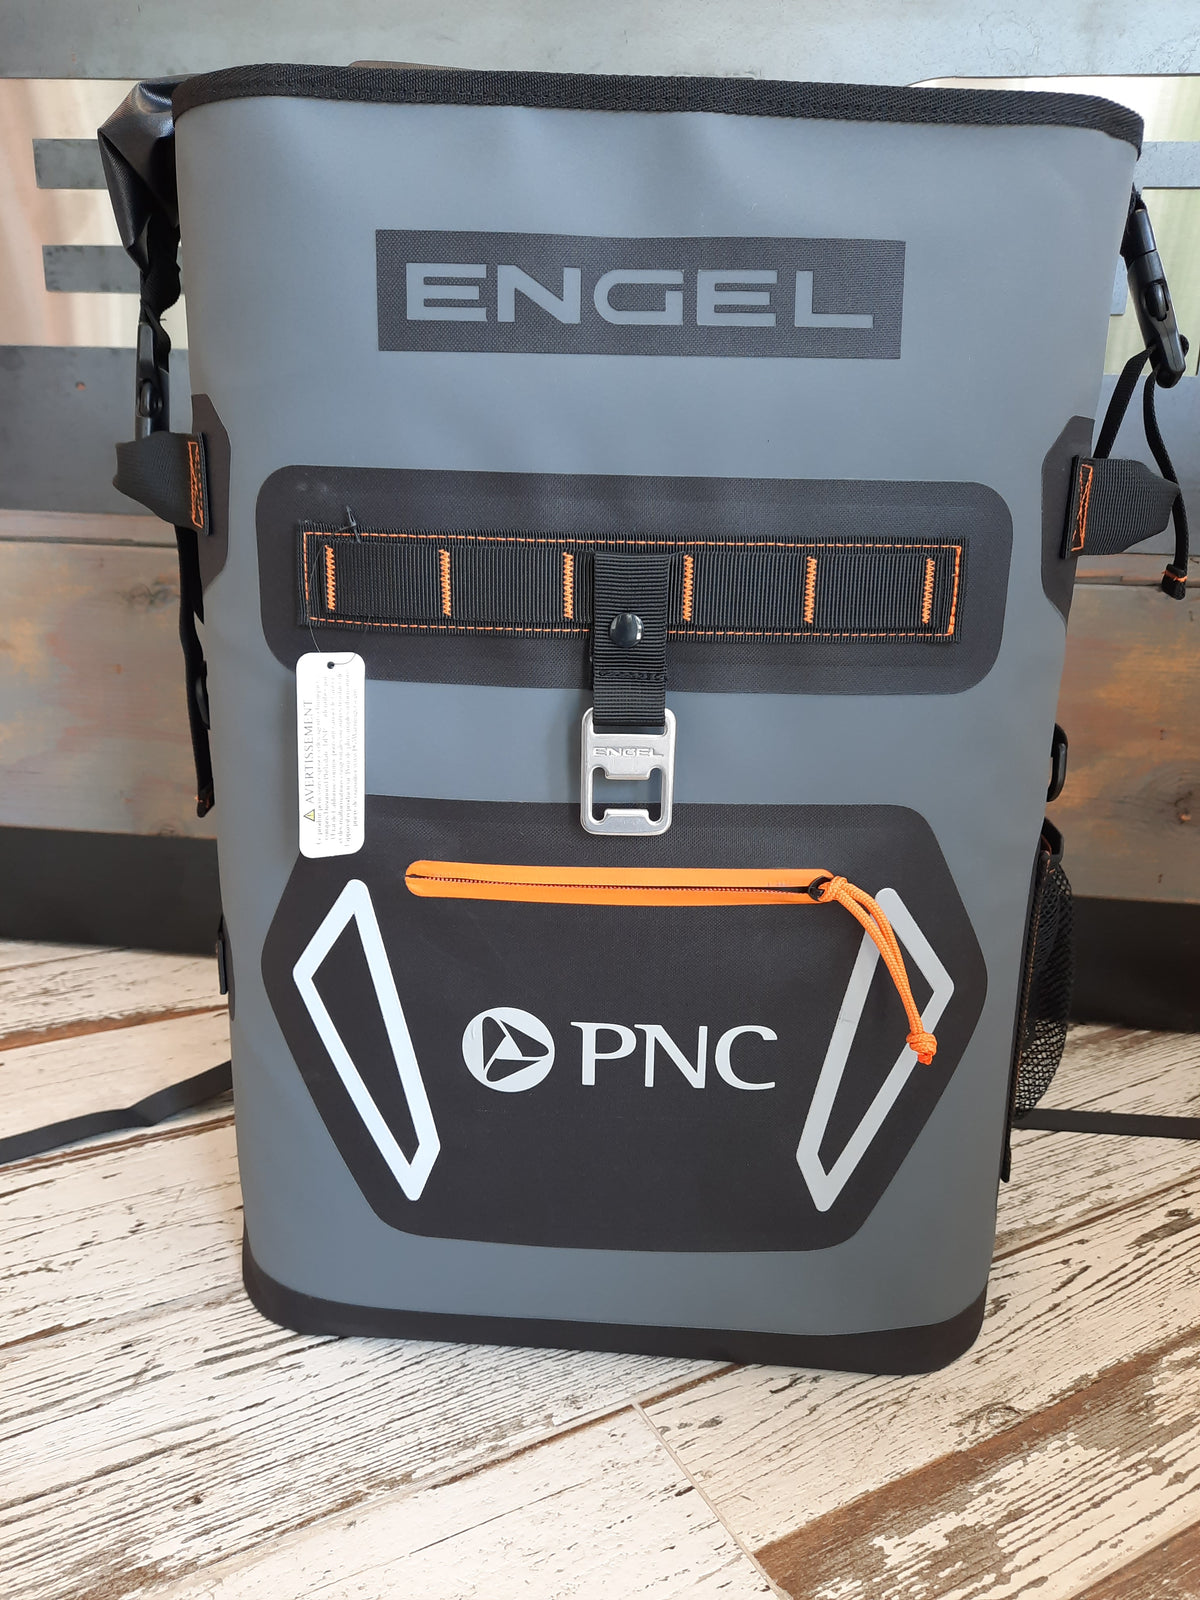 Engel Backpack Cooler with Logo